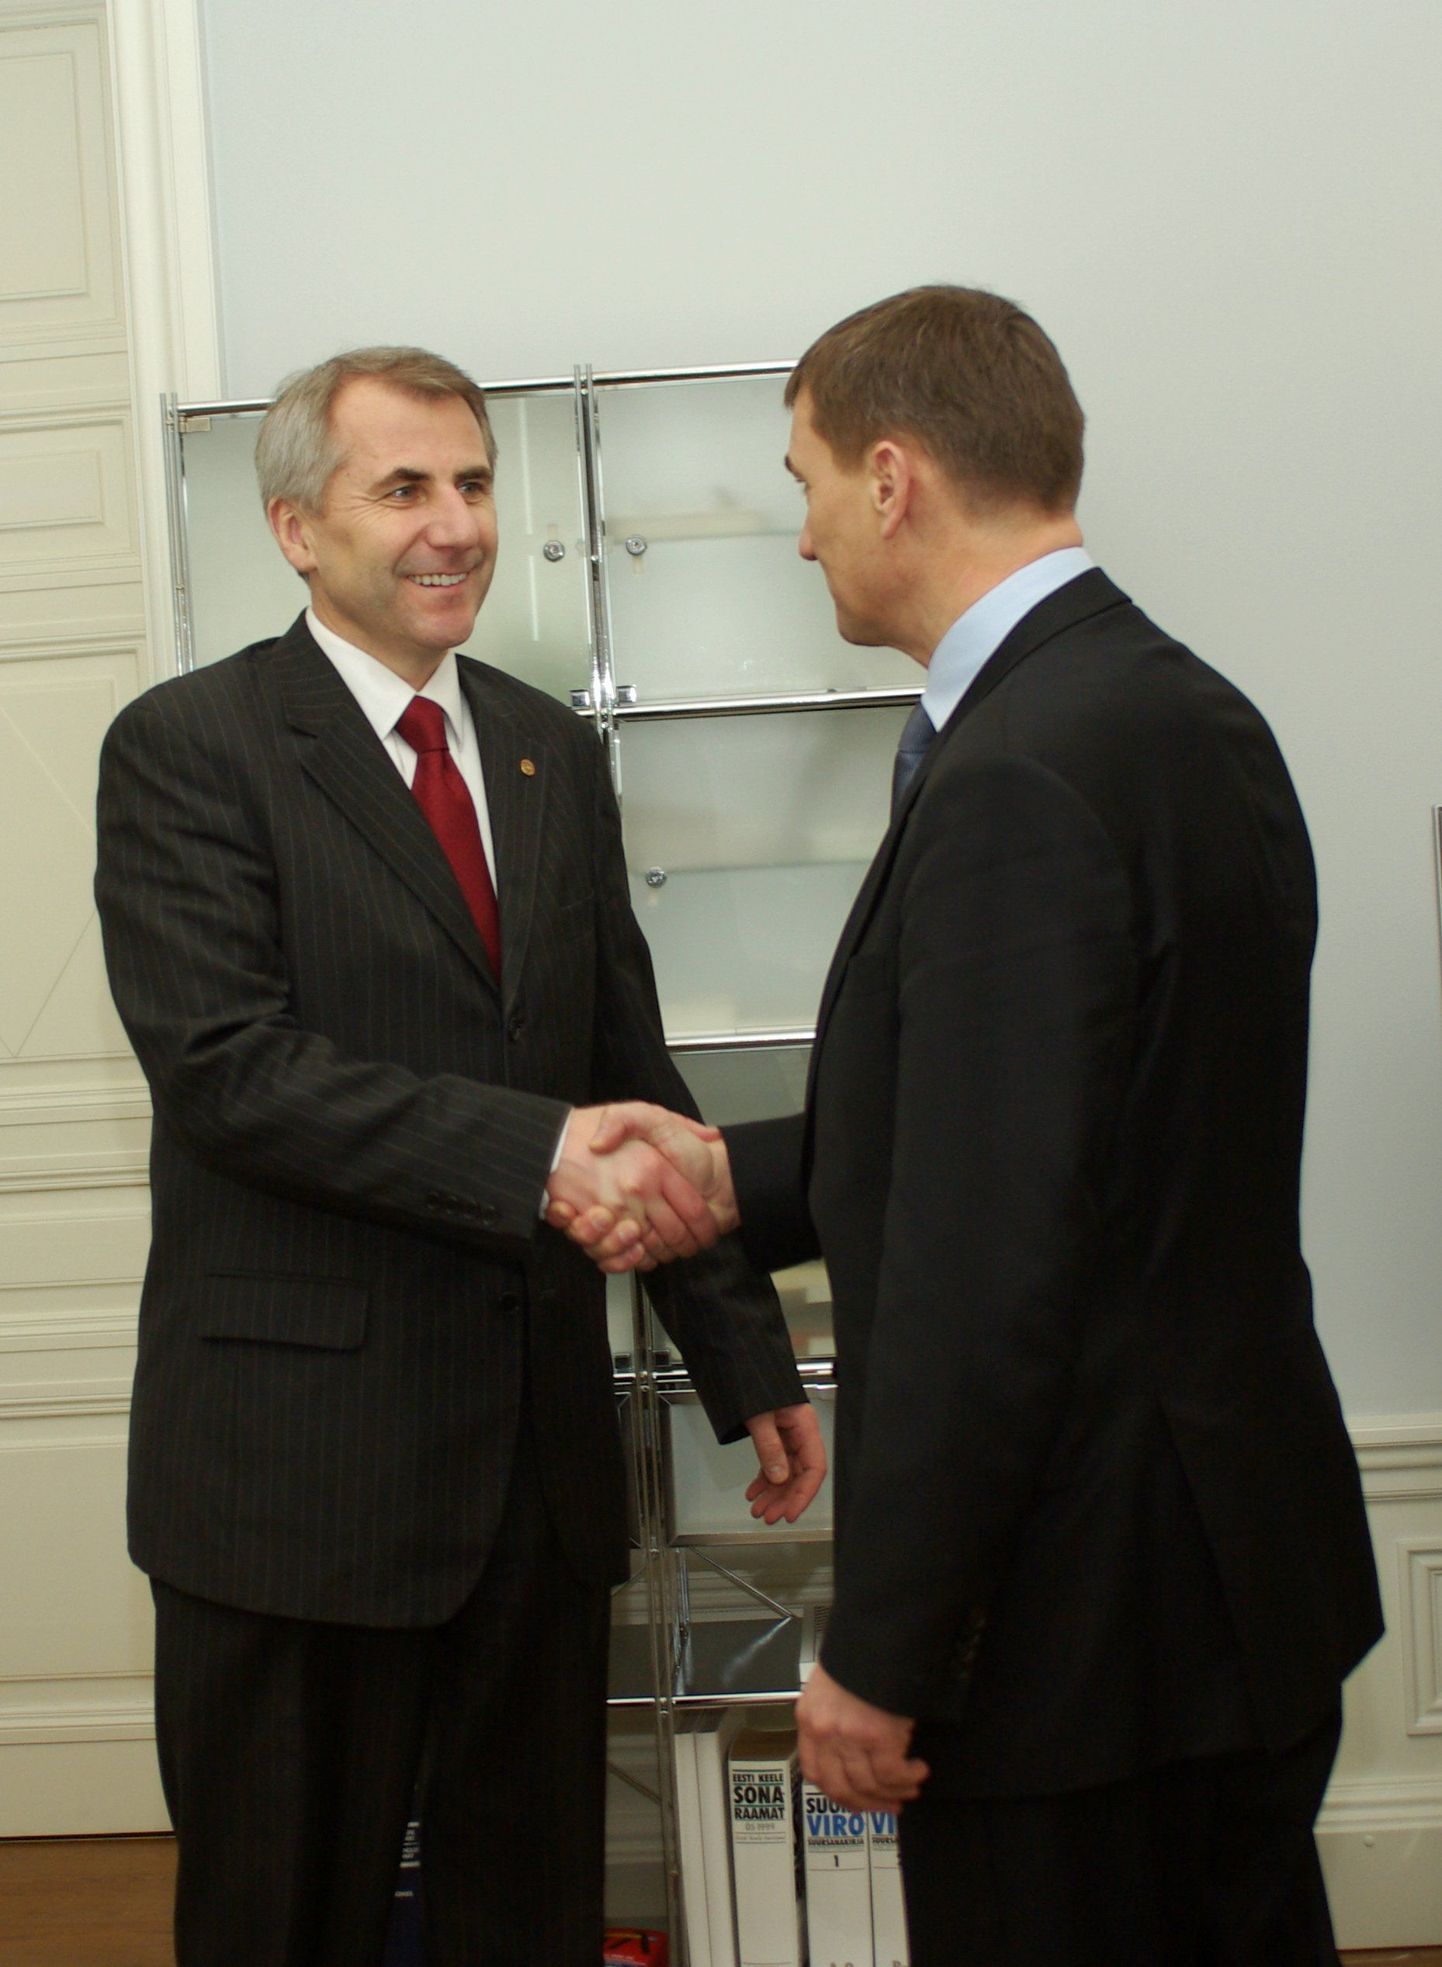 Leedu välisminister kohtumas peaminister Andrus Ansipiga.